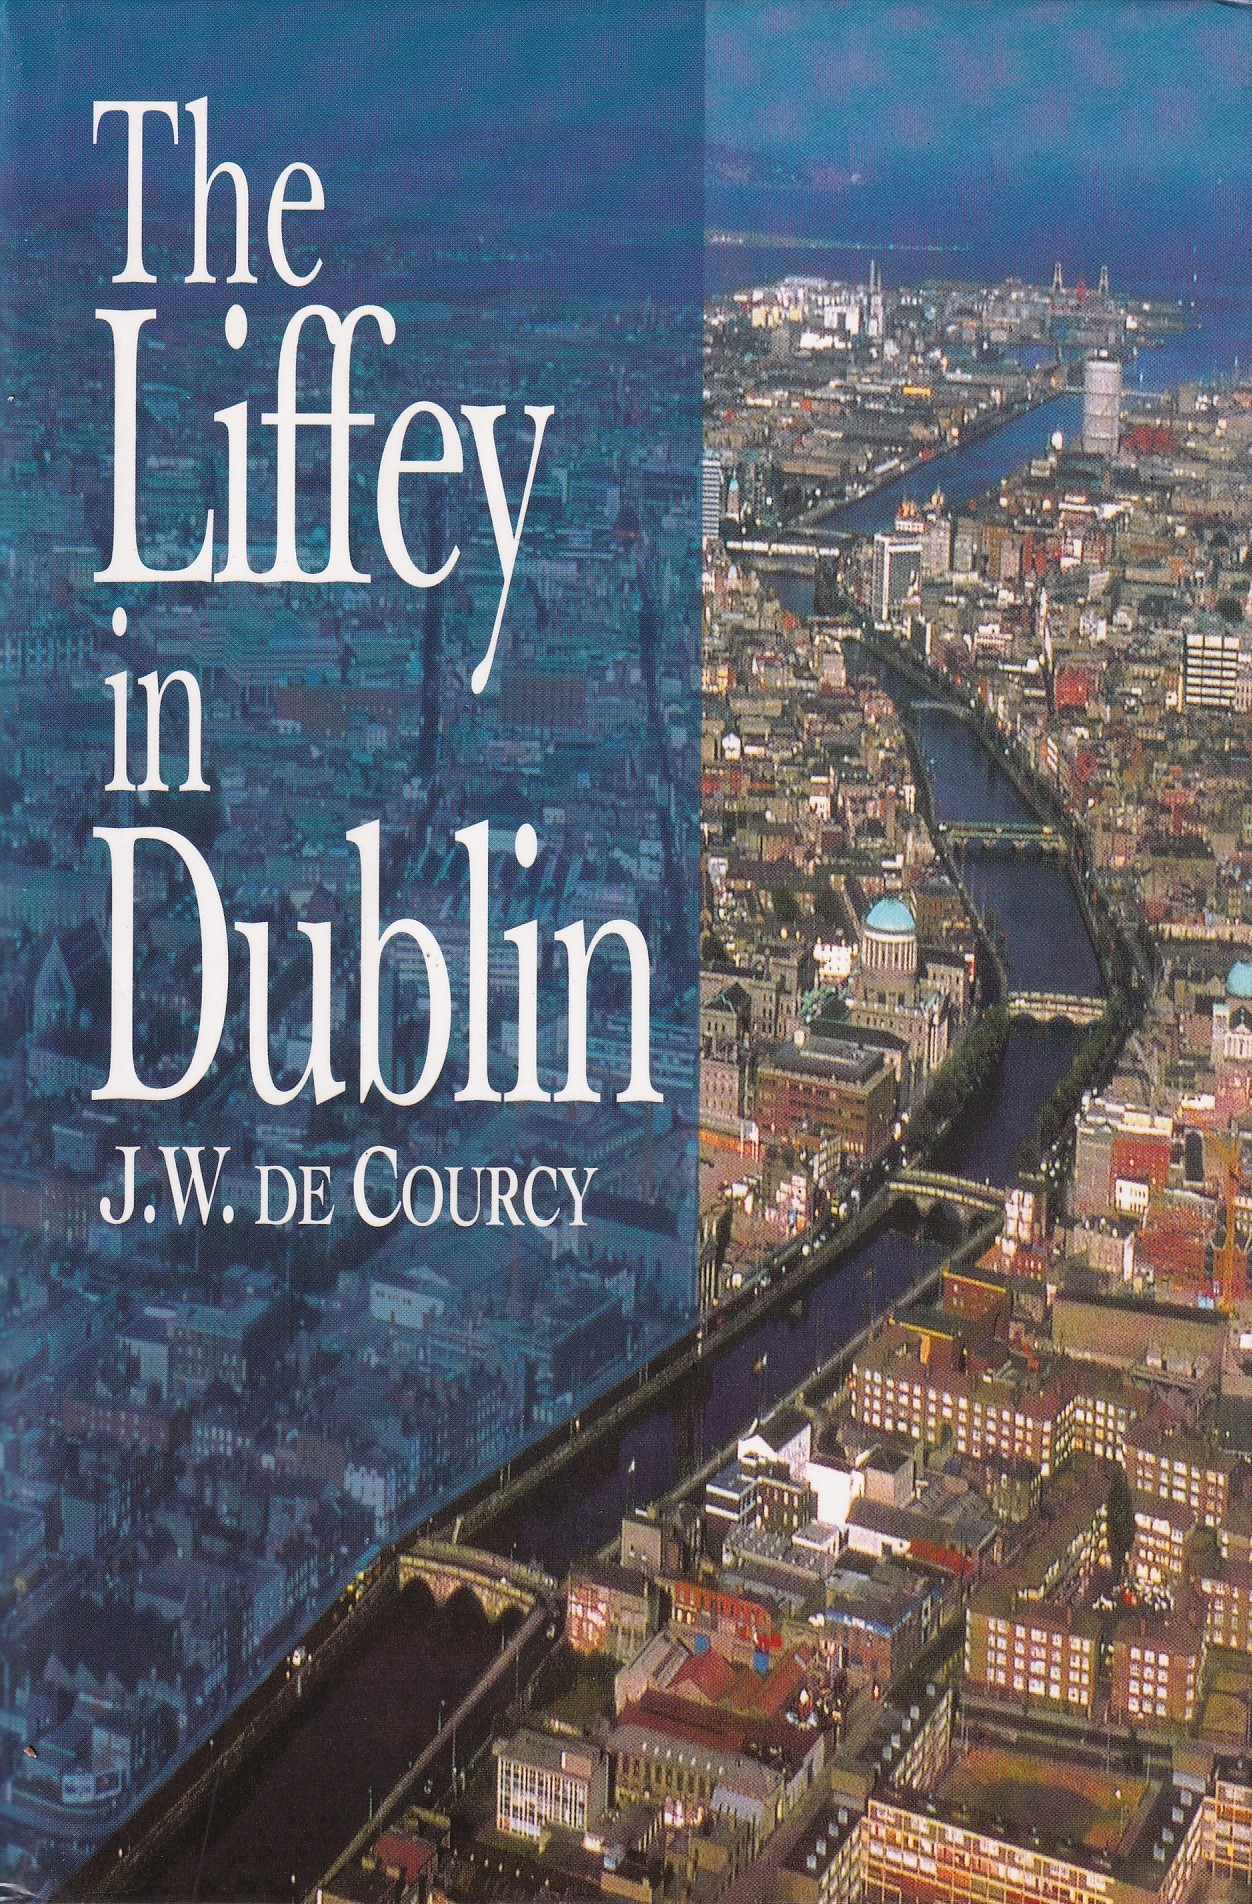 The Liffey in Dublin by J. W. de Courcy